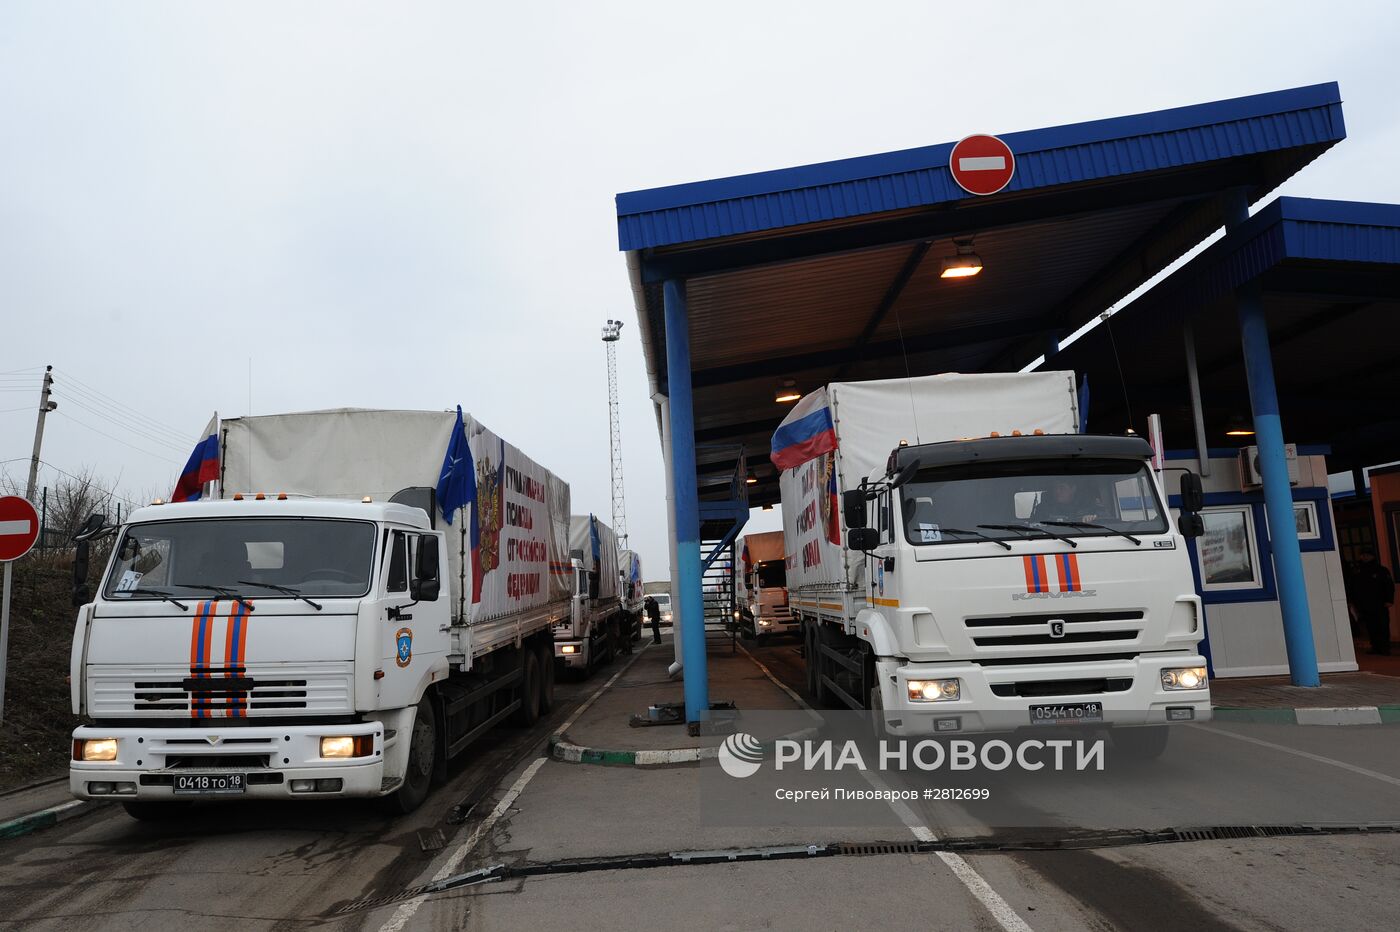 50-й конвой с гуманитарной помощью для Донбасса